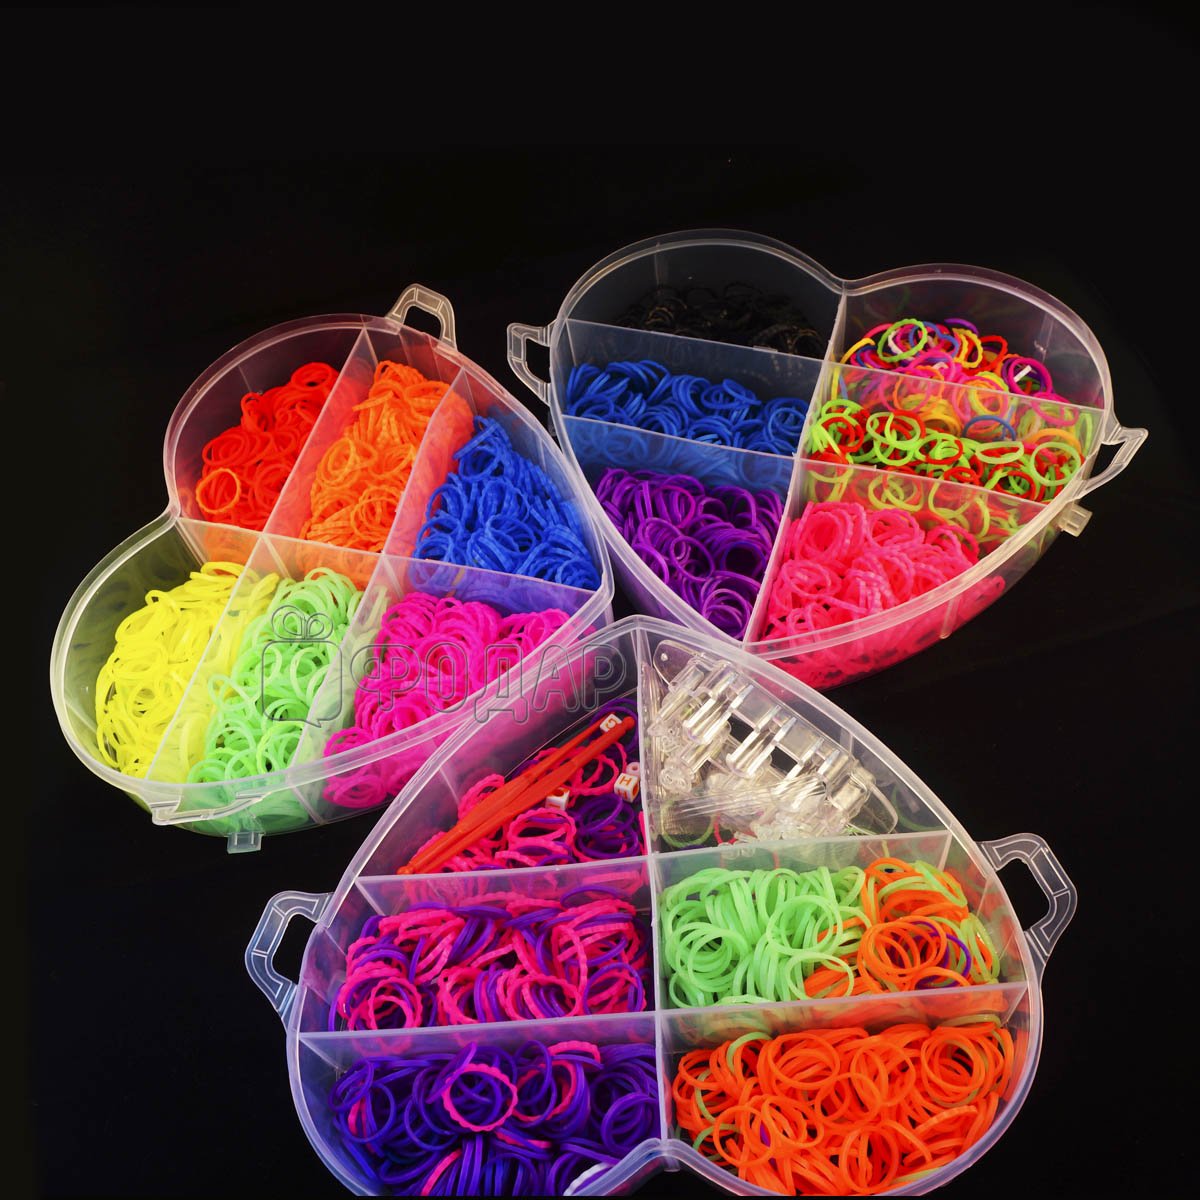 Большой ассортимент наборов для плетения из резиночек в интернет-магазине MrHappy.ru